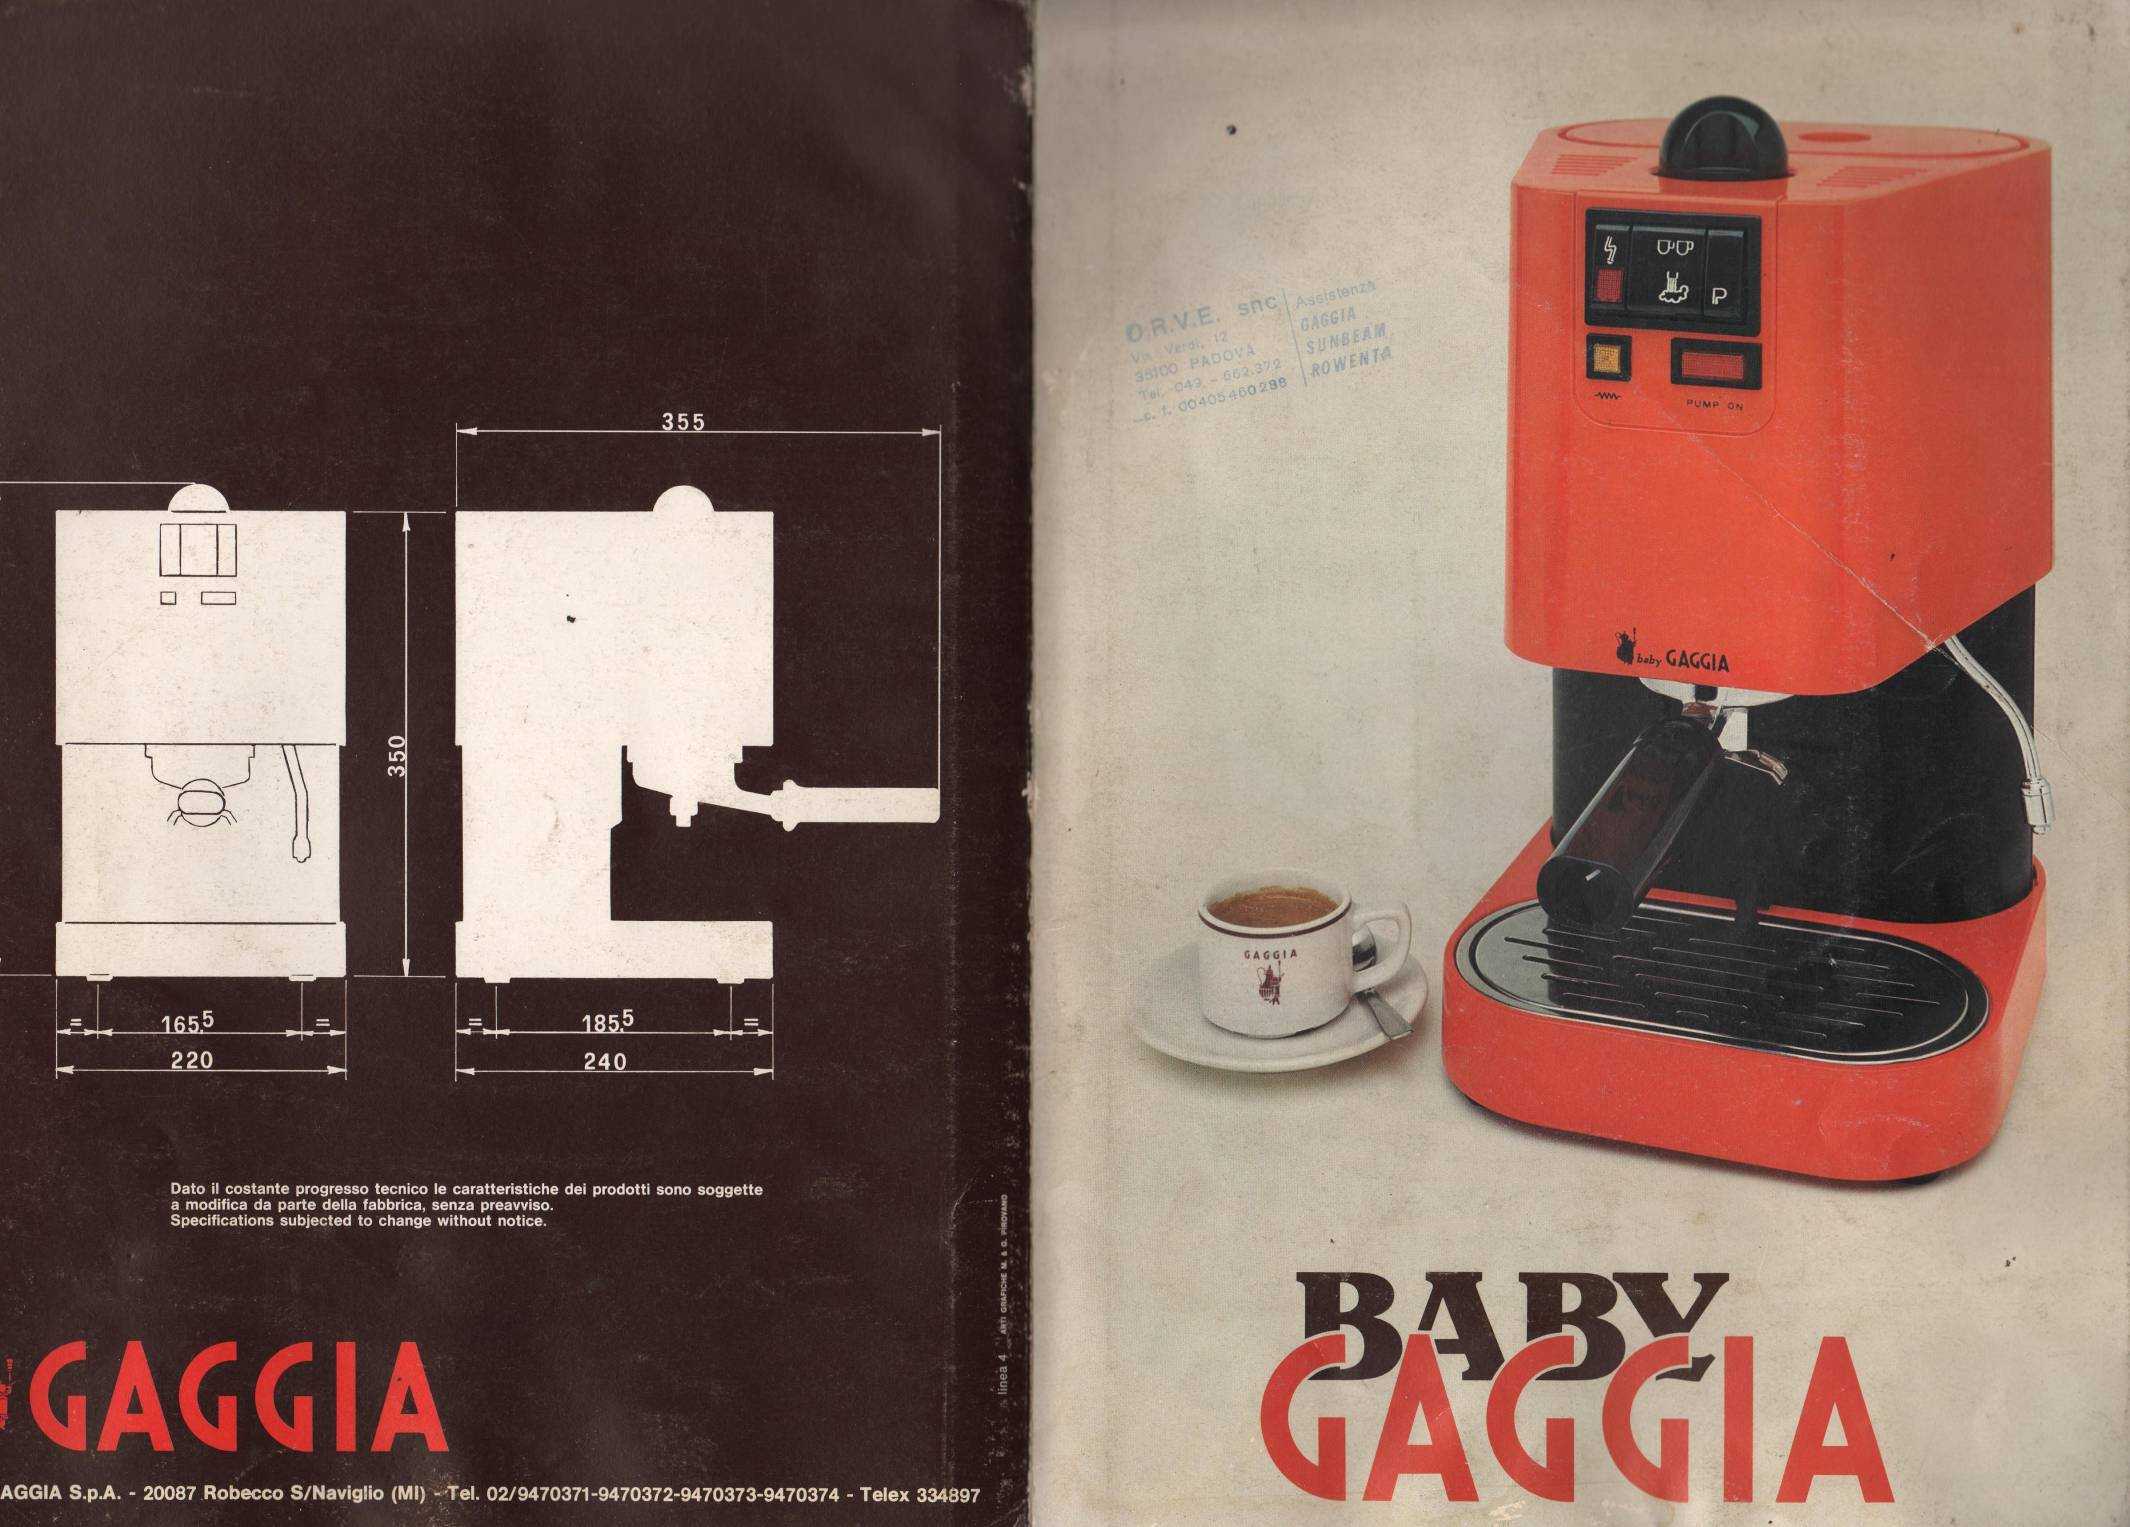 Baby Gaggia Macchina Caffè Espresso Italian Coffee Machine Milano Anni 90 